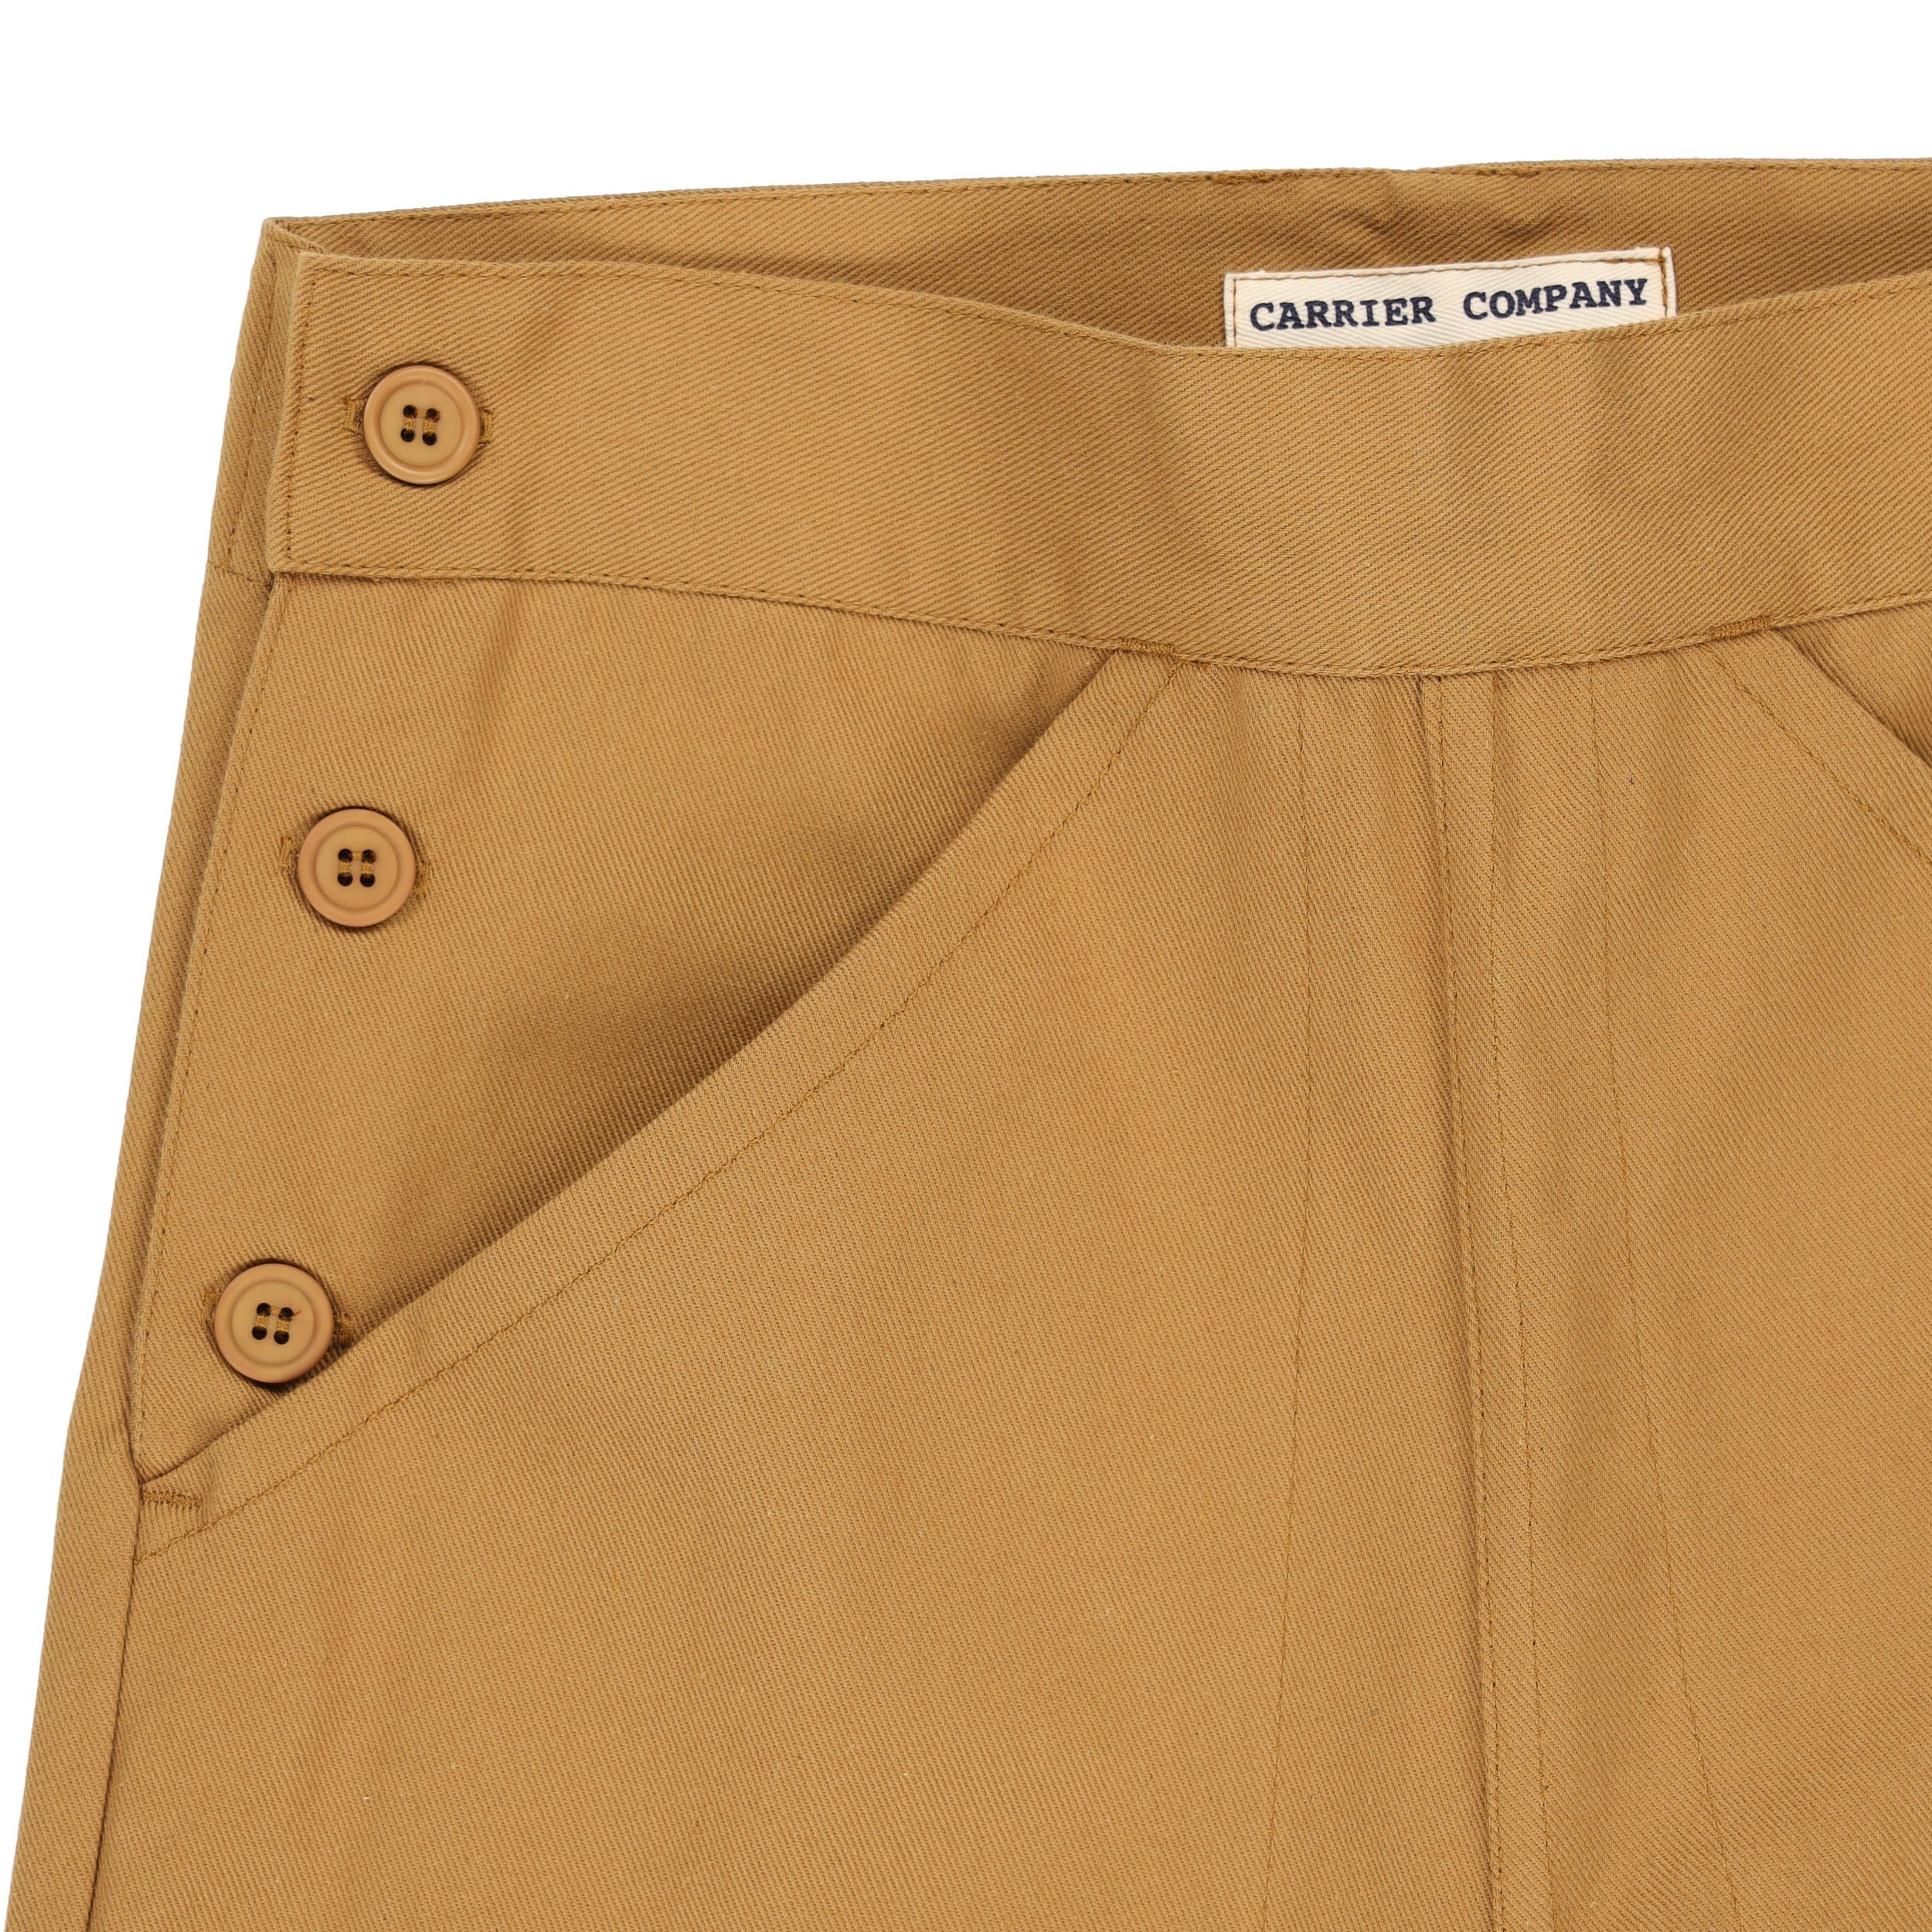 Carrier Company Women's Work Trouser in Tan